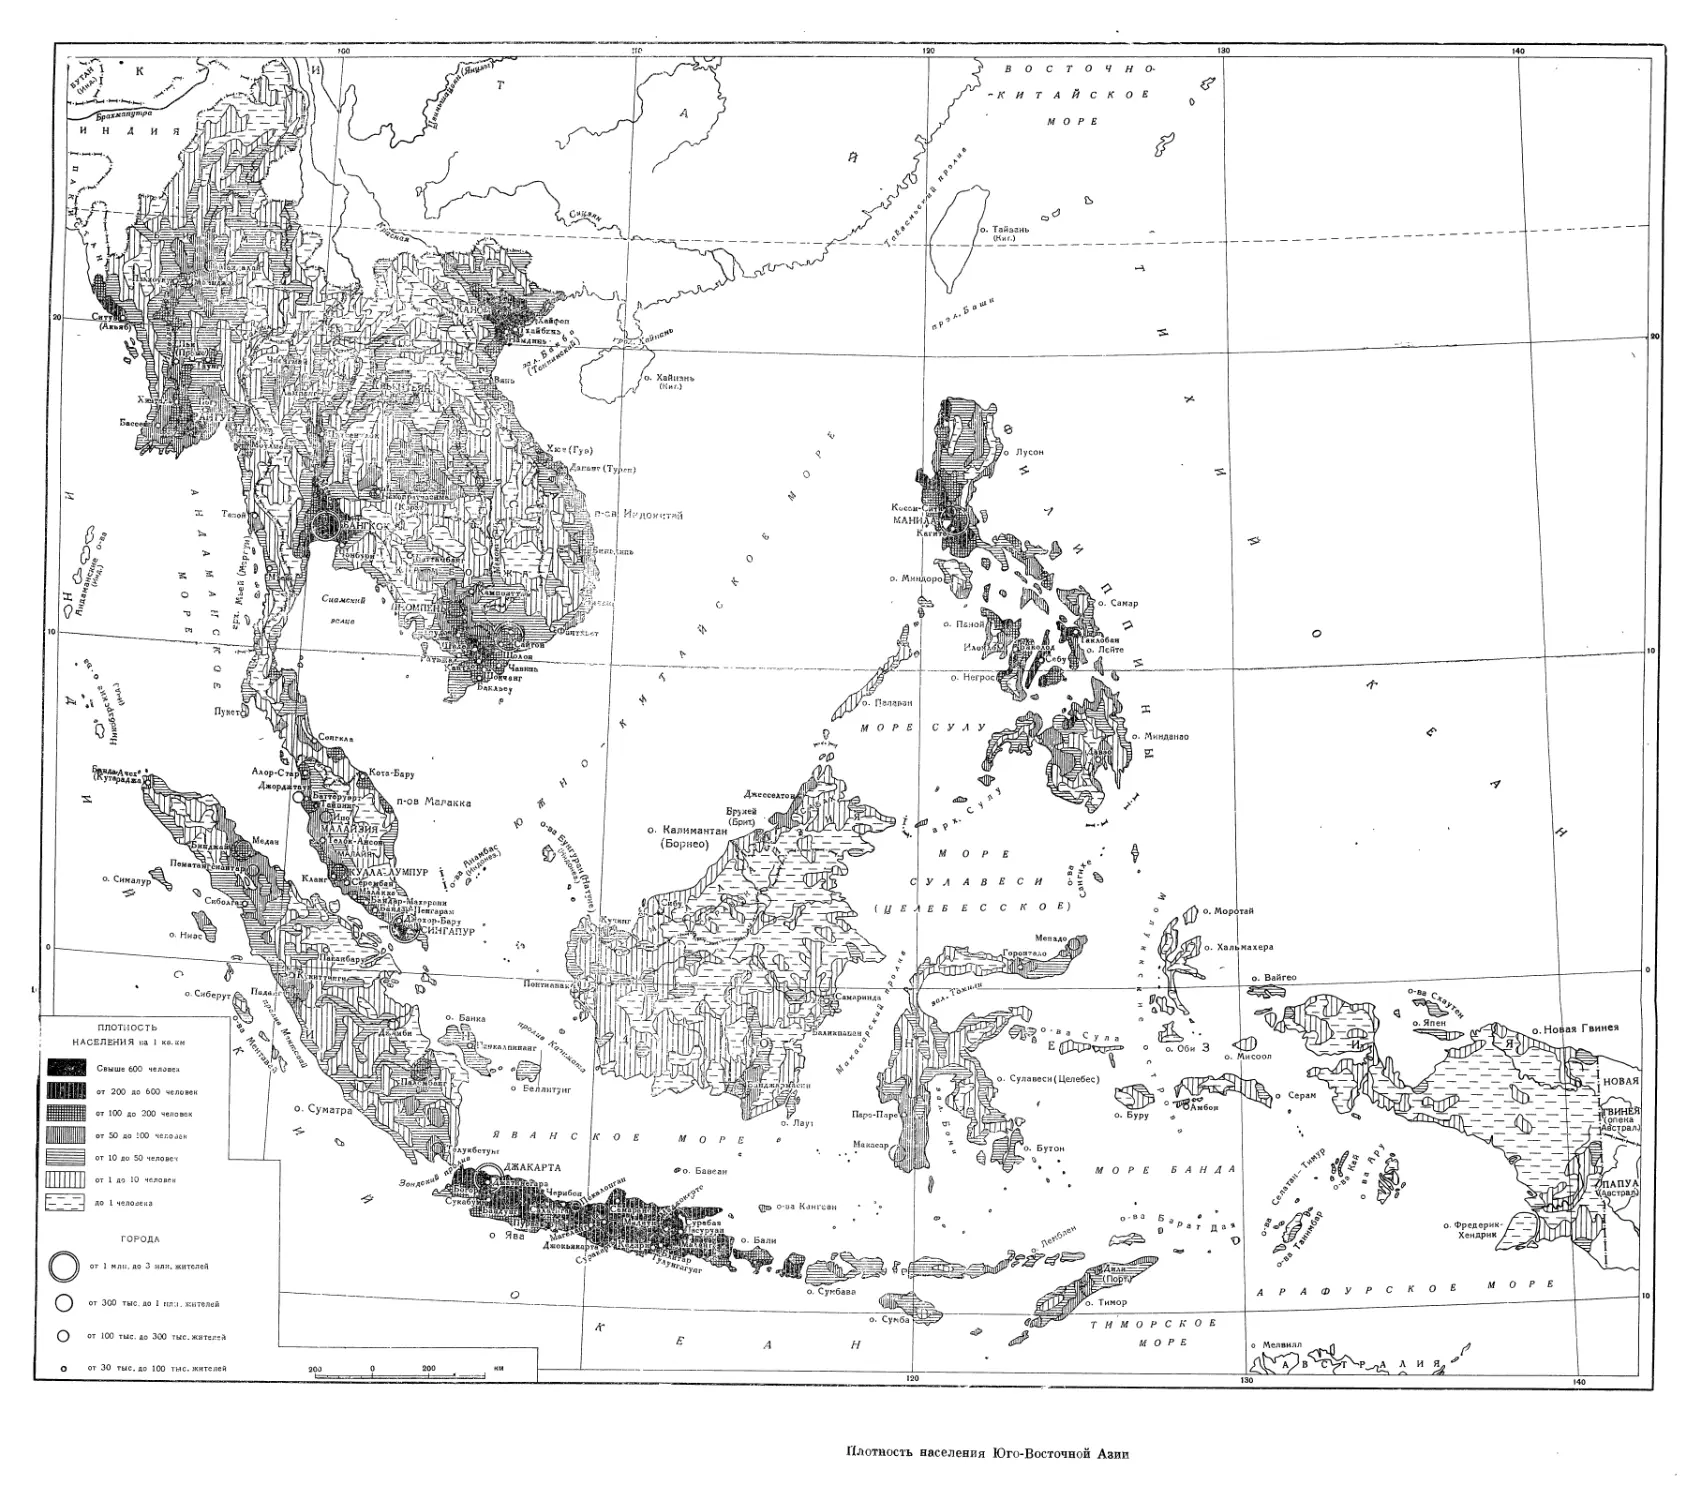 Вклейка. Плотность населения Юго-Восточной Азии